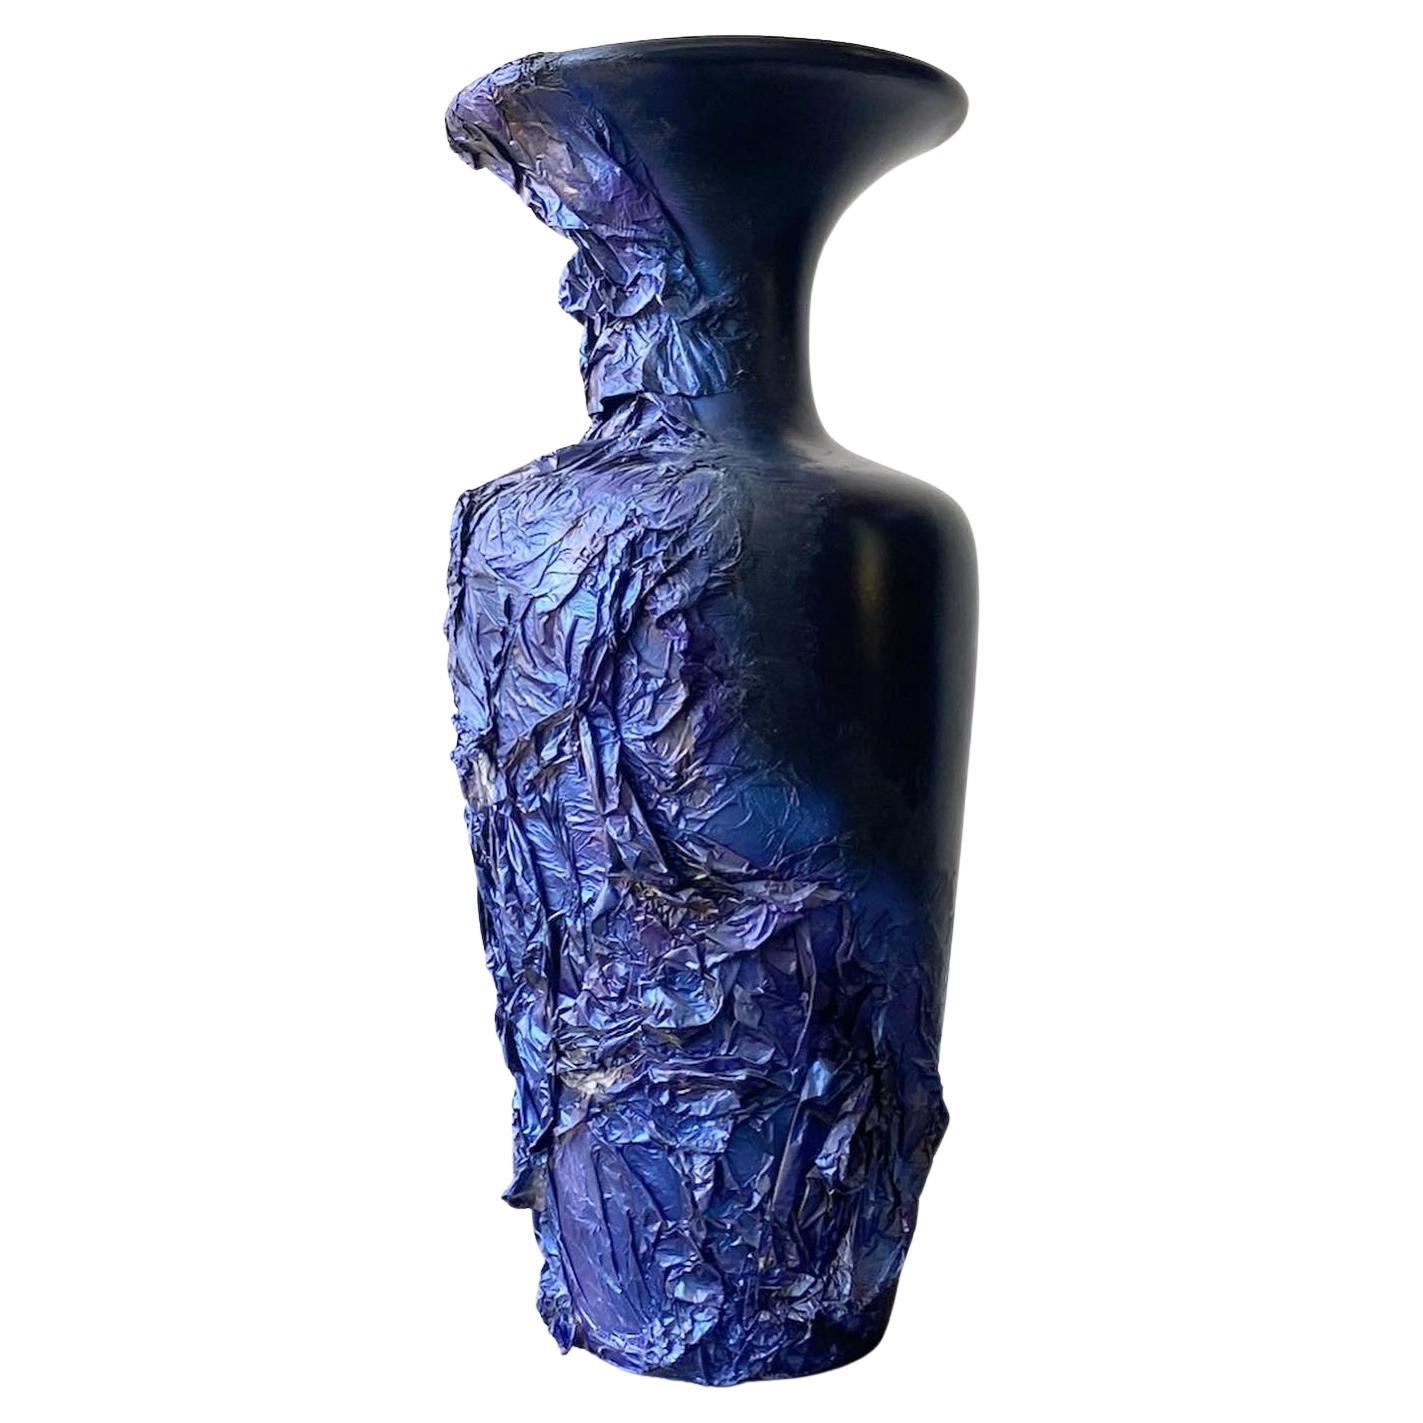 Vase postmoderne en papier mâché noir, bleu et violet